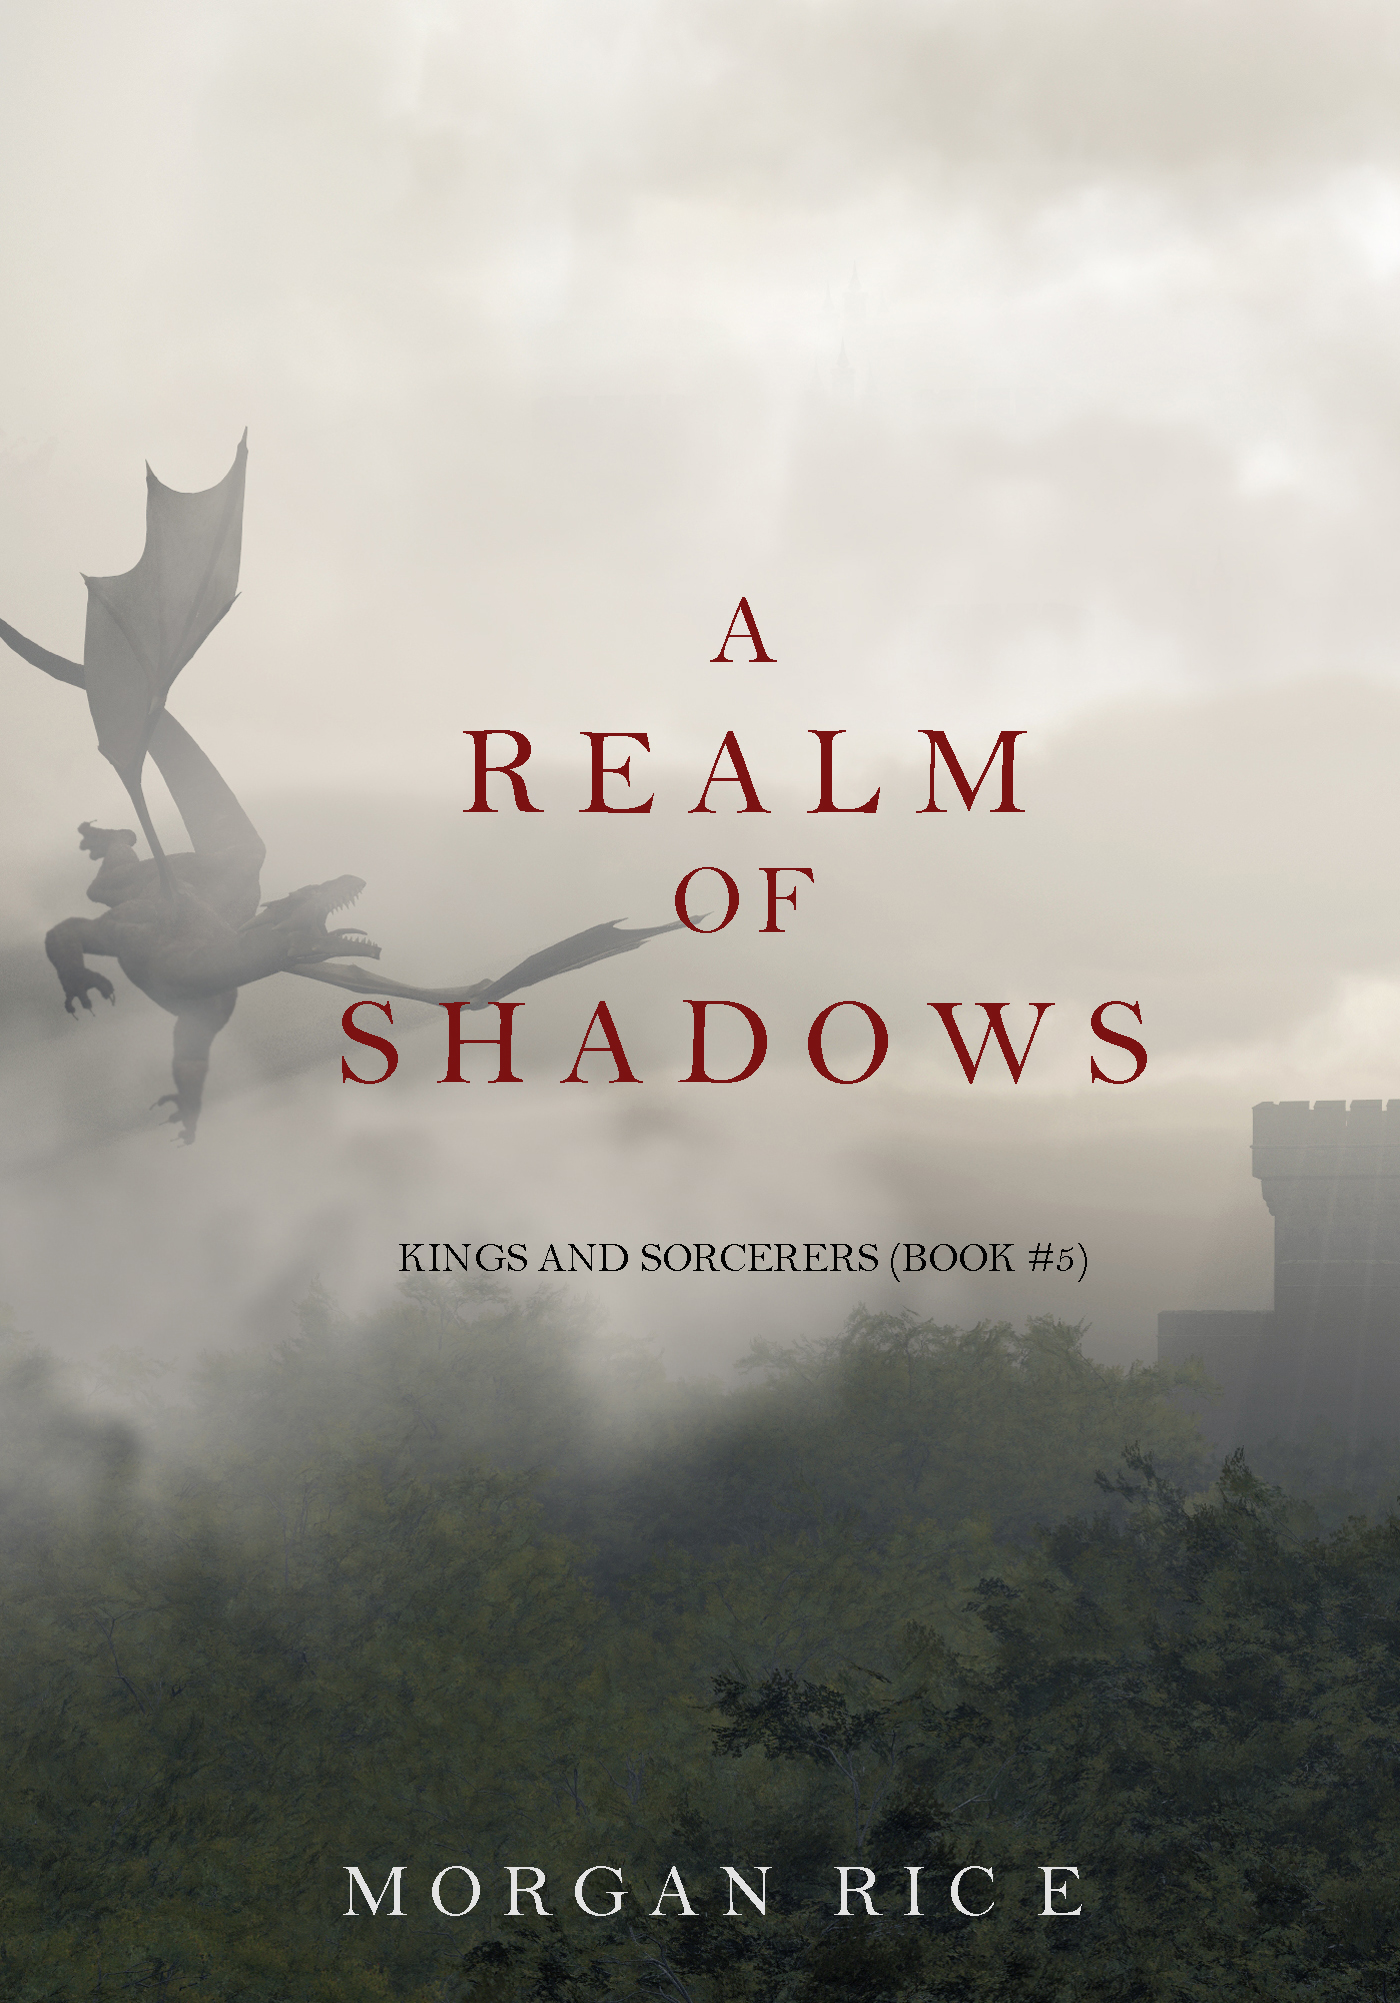 Книга A Realm of Shadows из серии , созданная Morgan Rice, может относится к жанру Героическая фантастика, Боевое фэнтези, Фэнтези про драконов, Зарубежное фэнтези, Иностранные языки. Стоимость электронной книги A Realm of Shadows с идентификатором 18172936 составляет 199.00 руб.